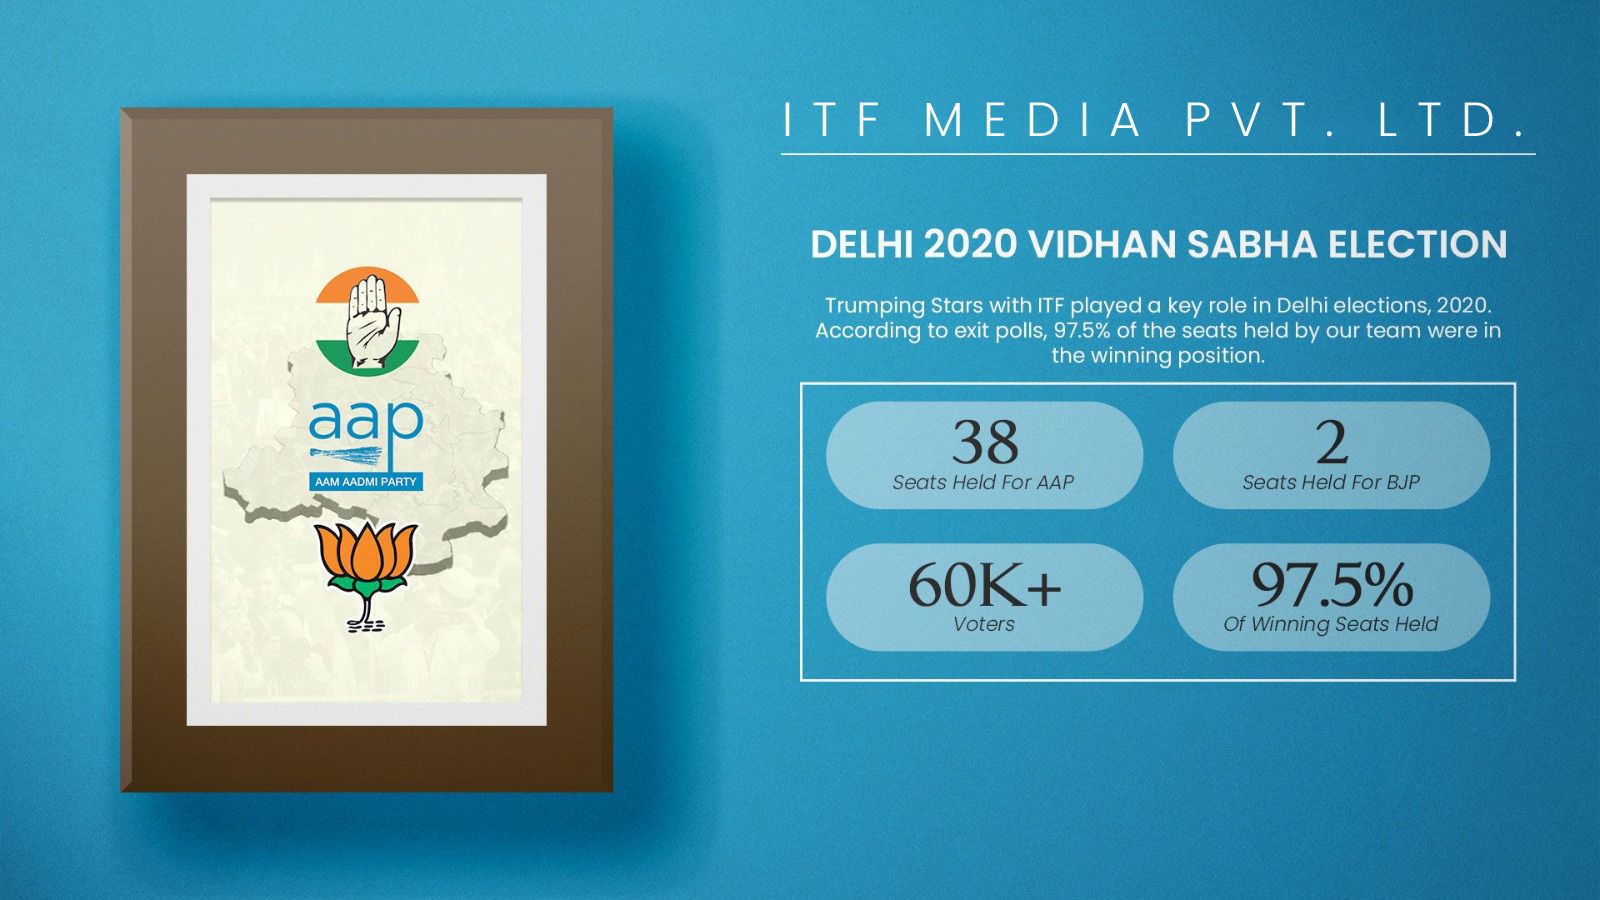 Delhi 2020 Vidhan Sabha Election